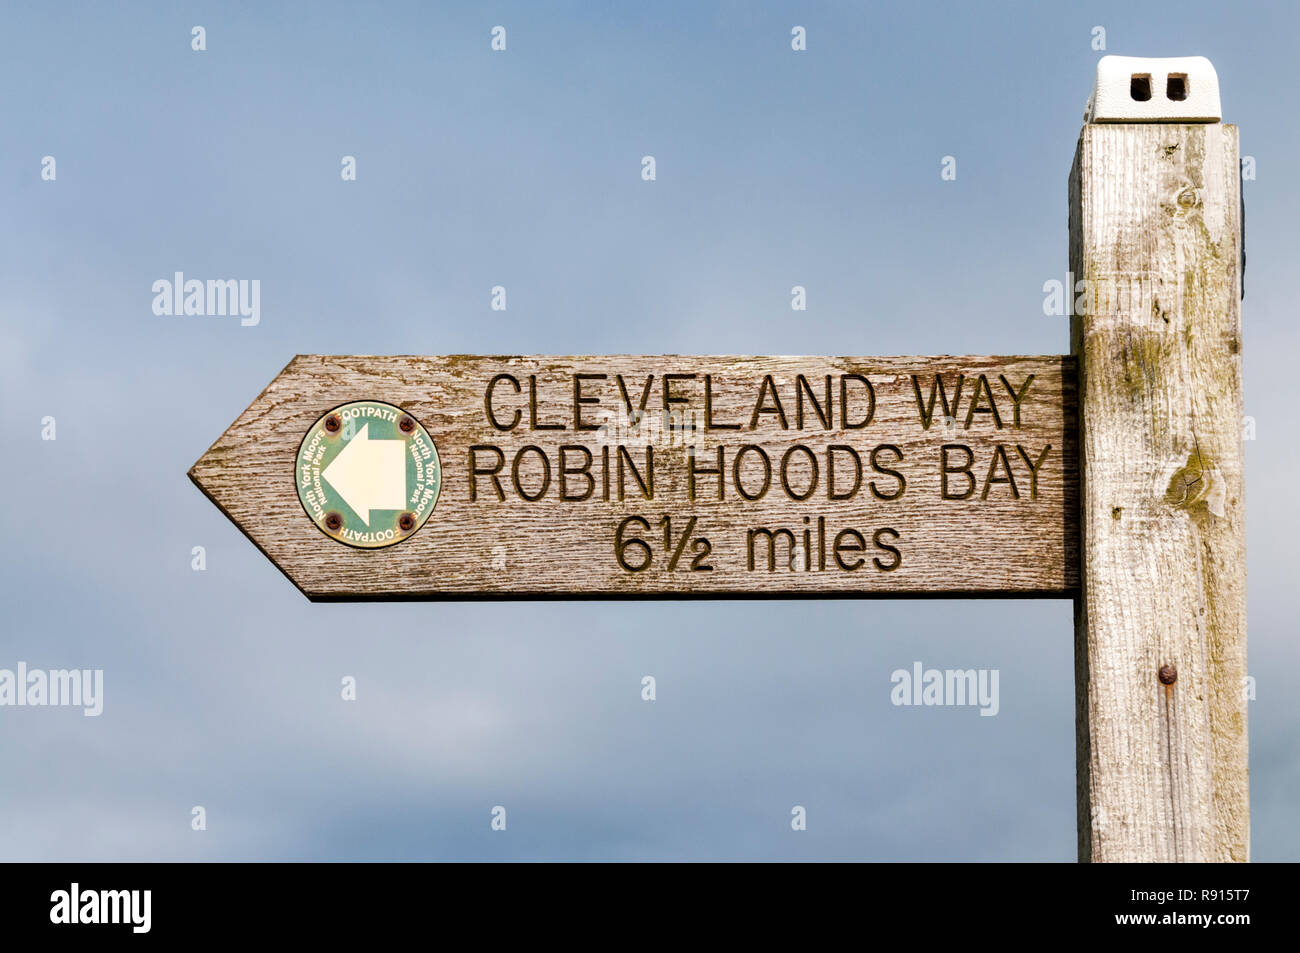 Ein Wegweiser für die Cleveland Weg lange Strecke Fußweg weist den Weg zu Robin Hoods Bay. Stockfoto